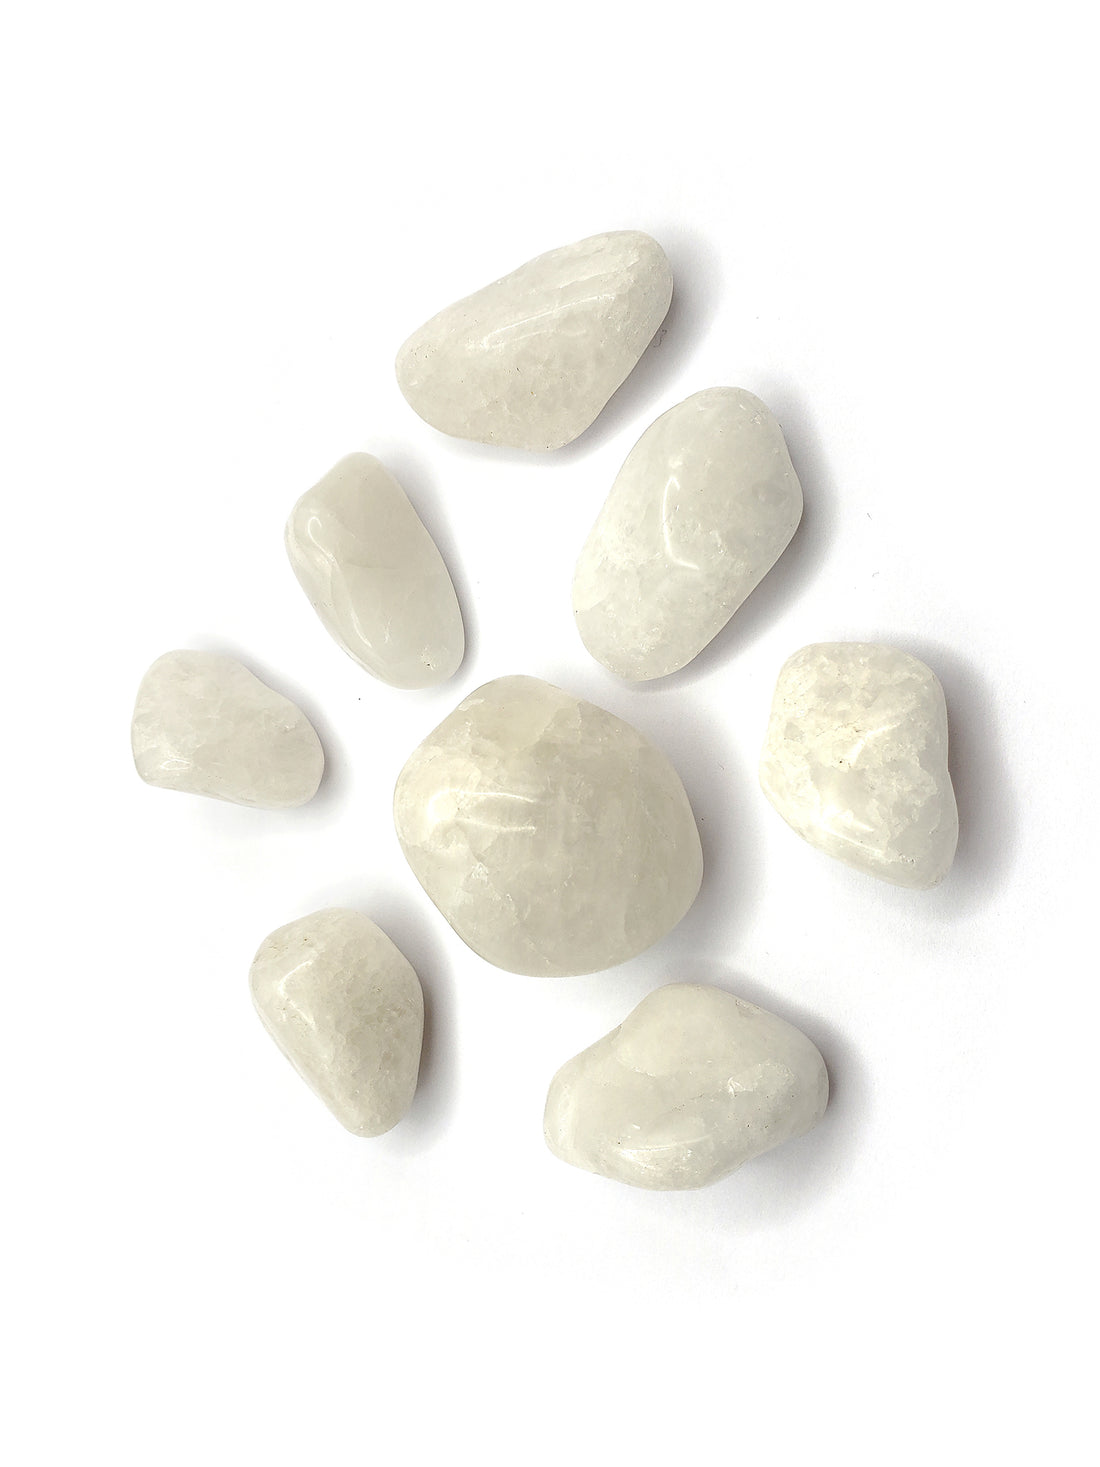 Milky quartz stone pieces on white background